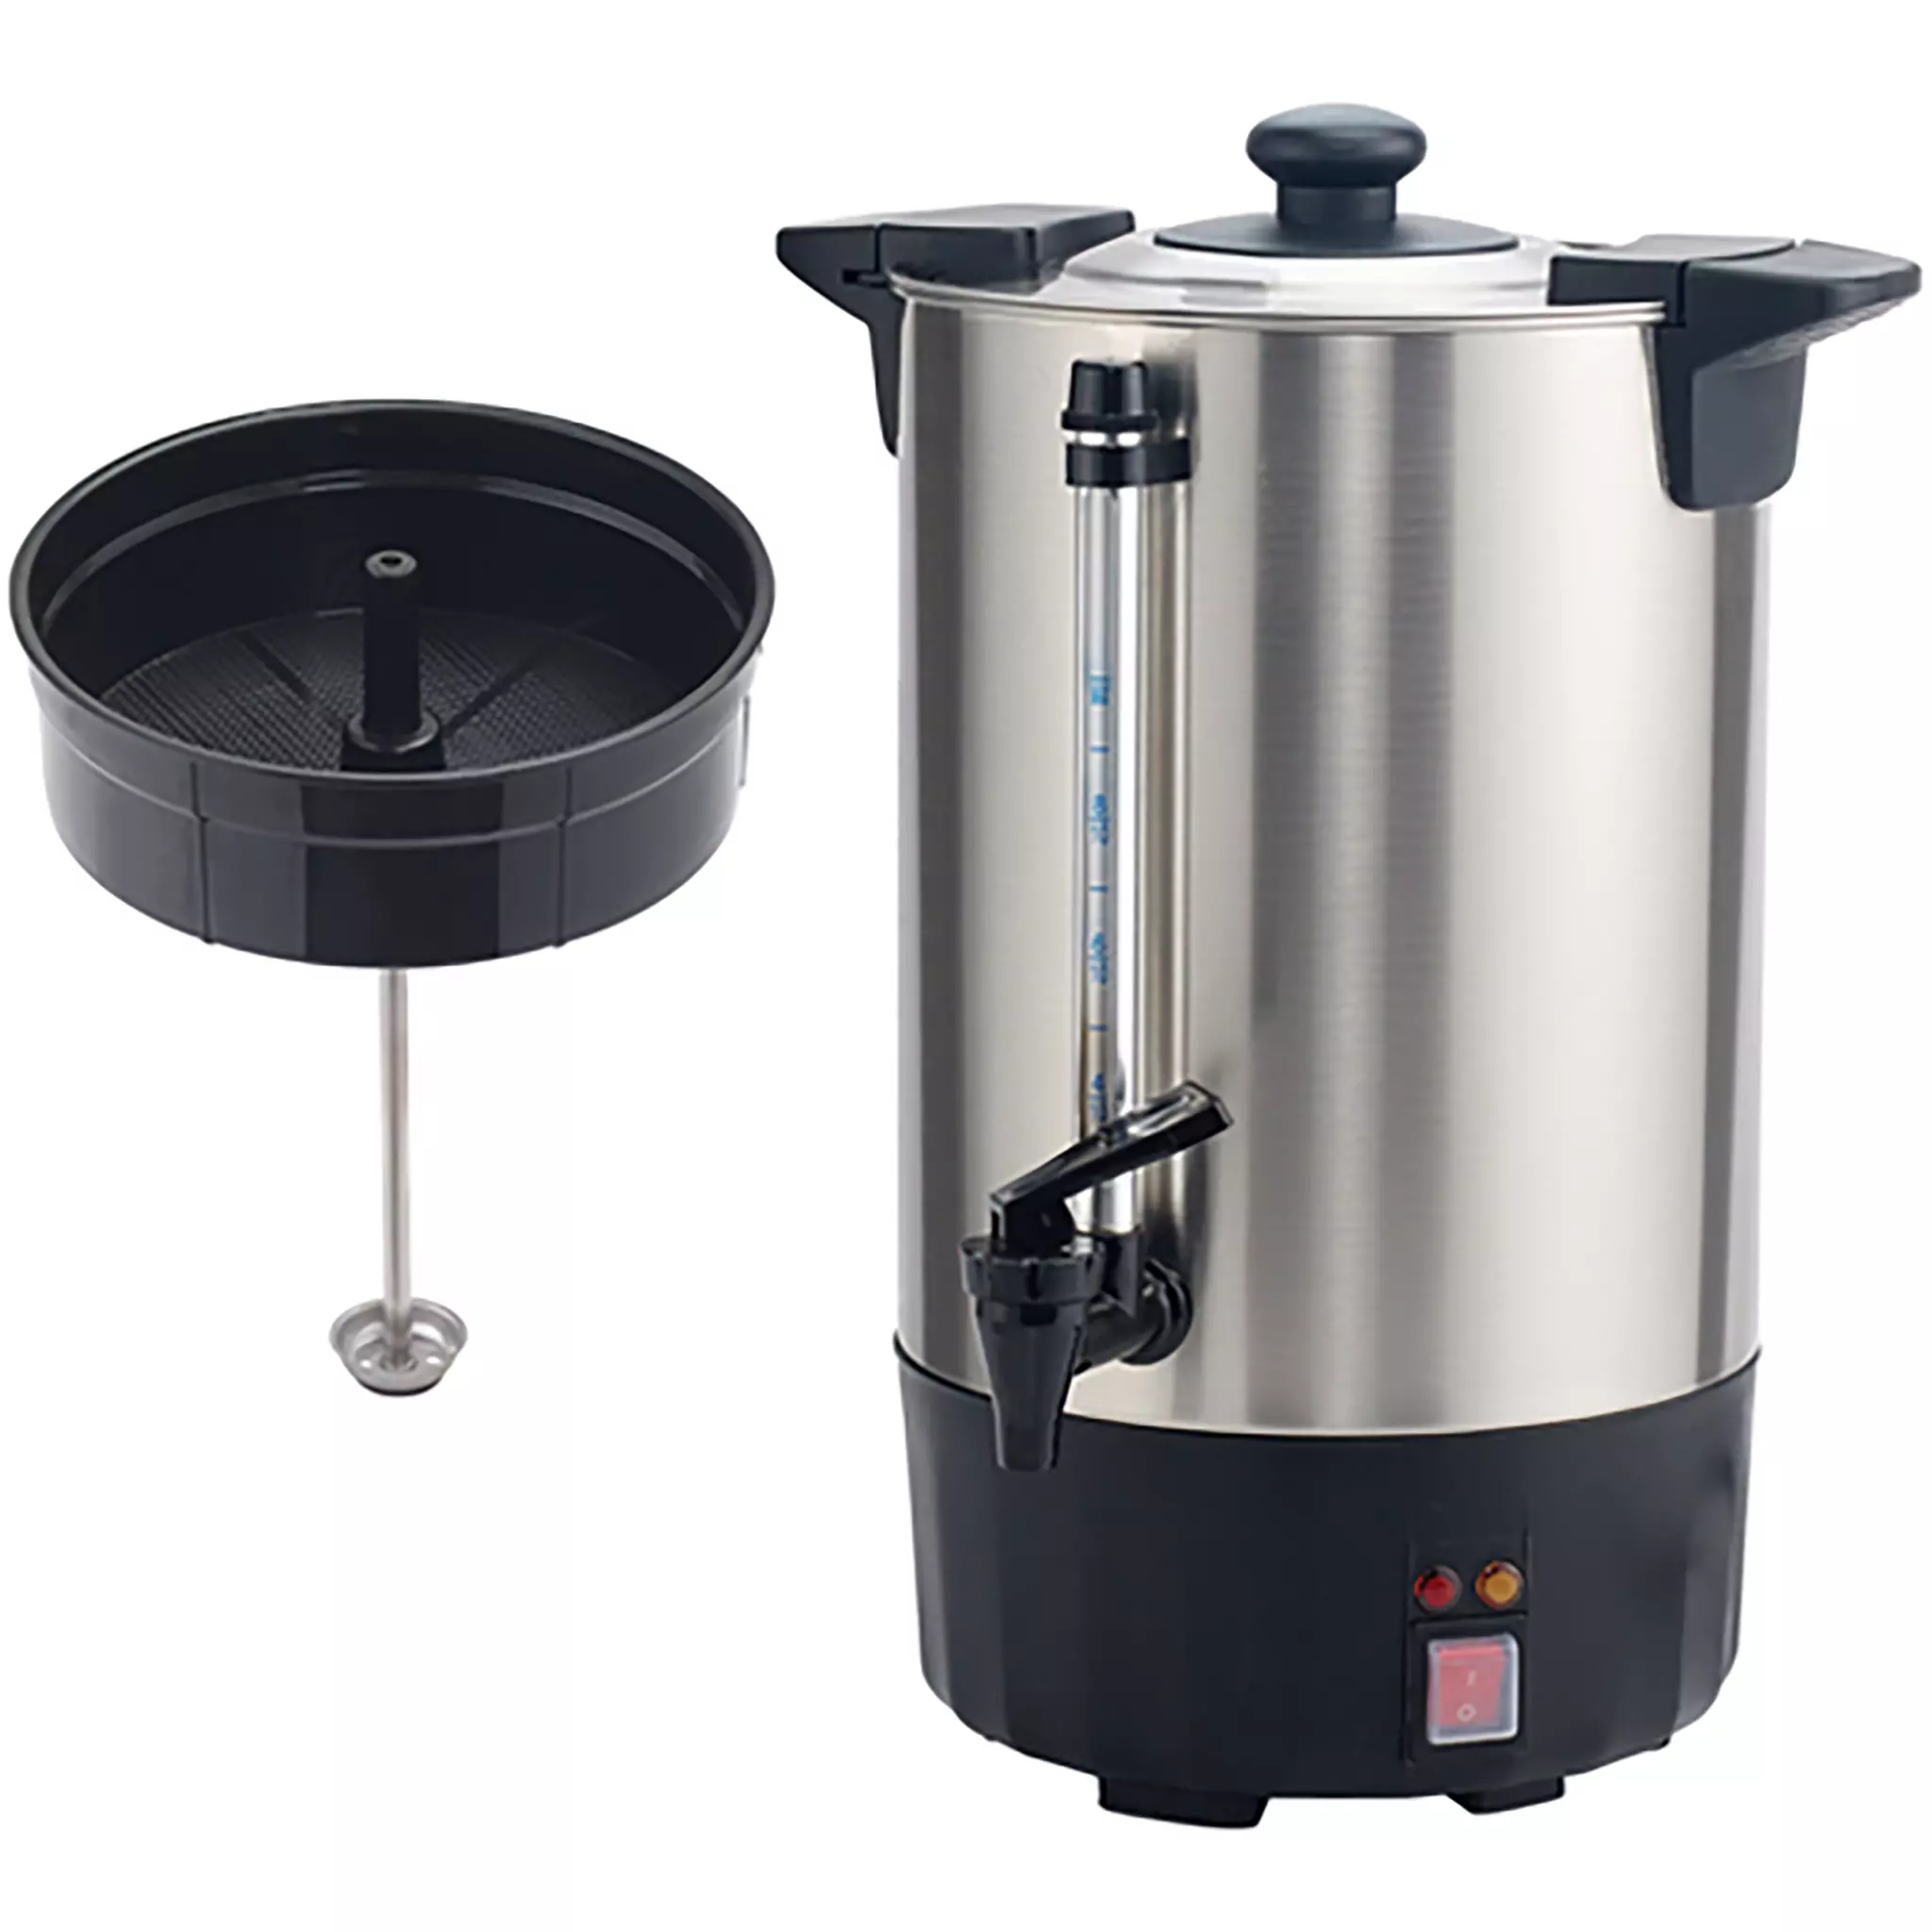 http://phoenixfoodequipment.com/cdn/shop/products/Winco-ECU-50A-8L-Electric-Percolator-Hot-Water-Dispenser.webp?v=1650604491